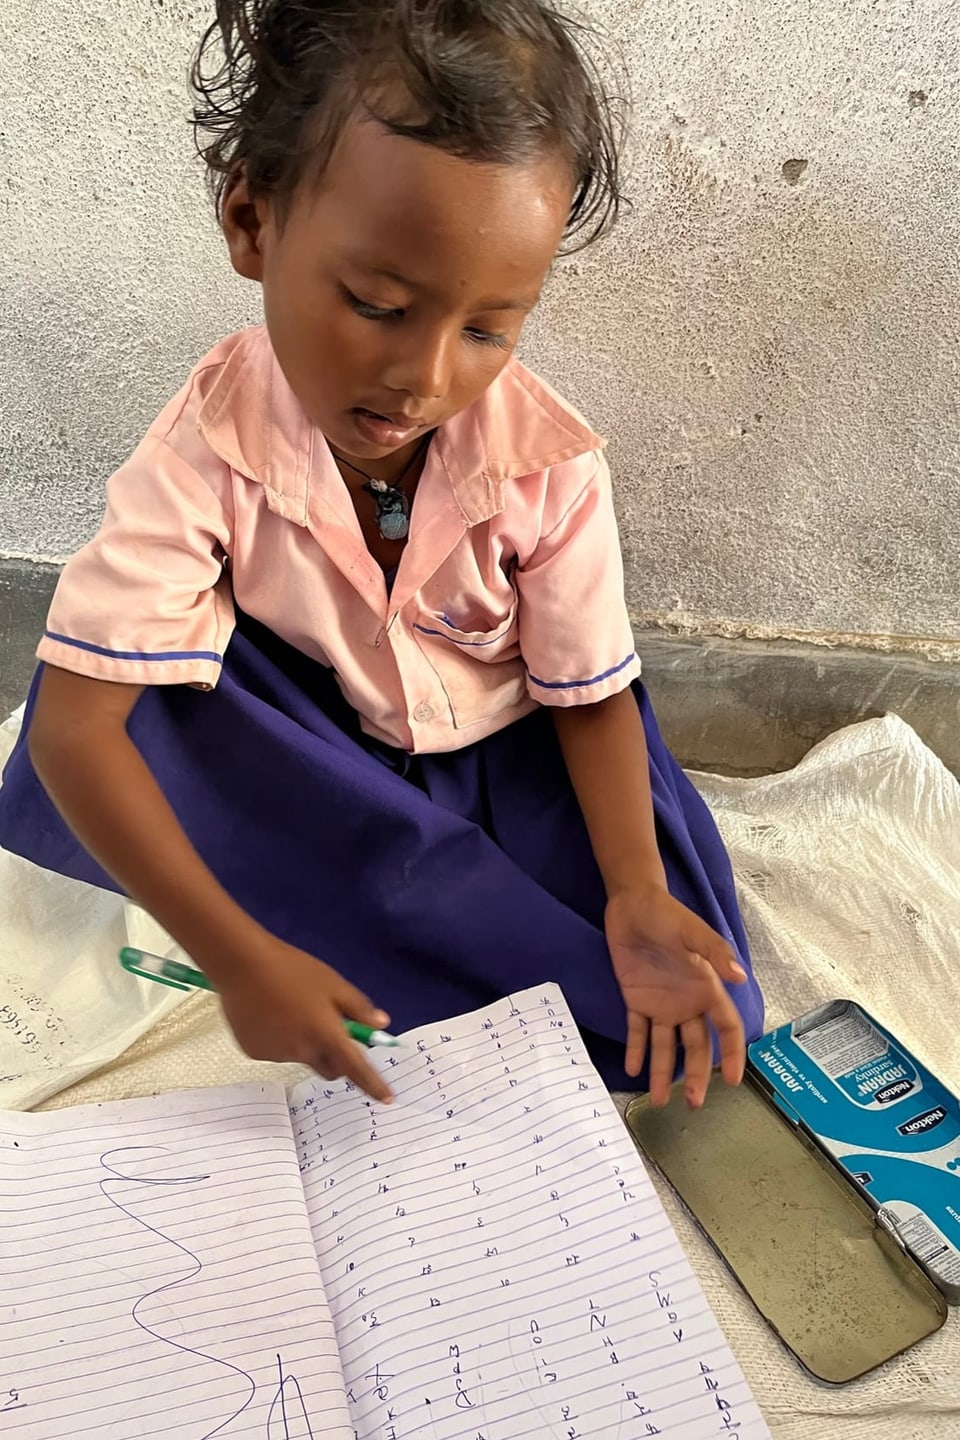 Ein kleines Mädchen in Schuluniform sitzt am Boden und spielt Schule.